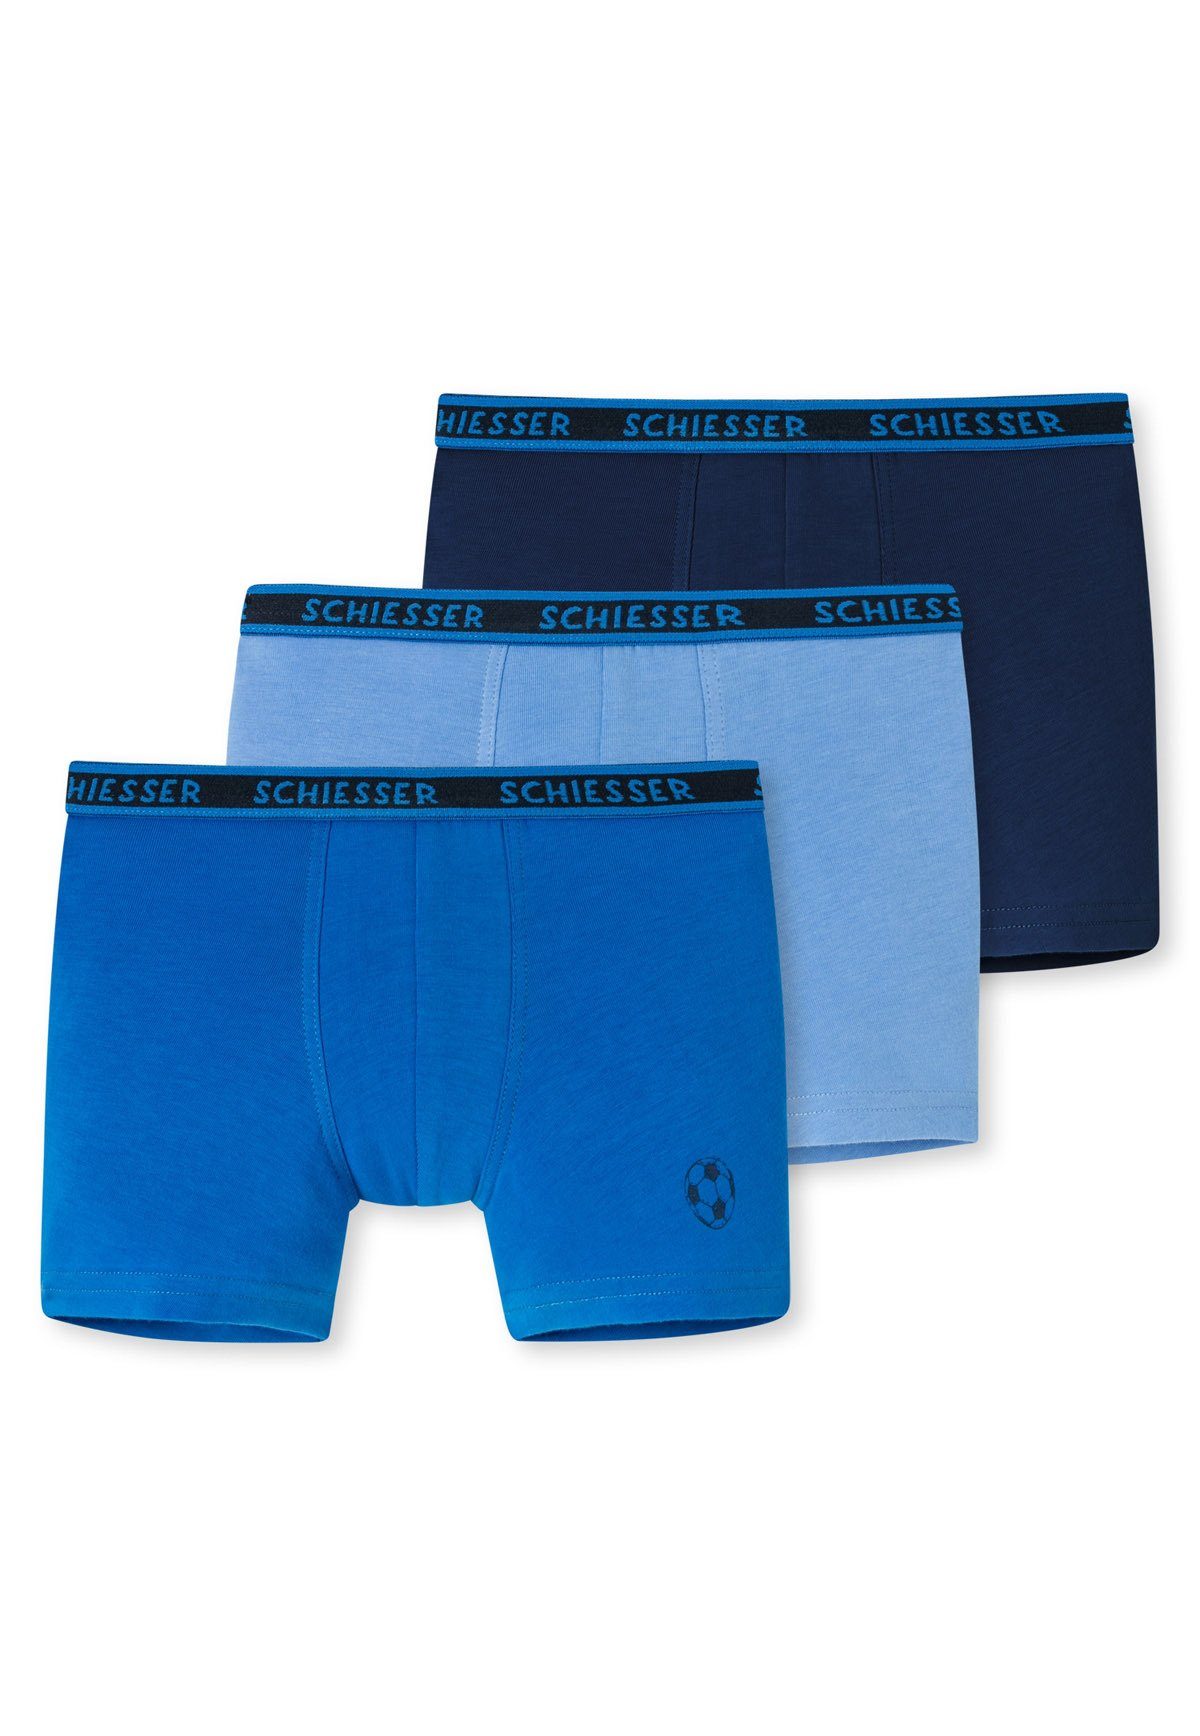 Schiesser Boxer Jungen Unterhose, Shorts 3er Pack Hellblau/Blau/Dunkelblau Shorts (2) Hip 